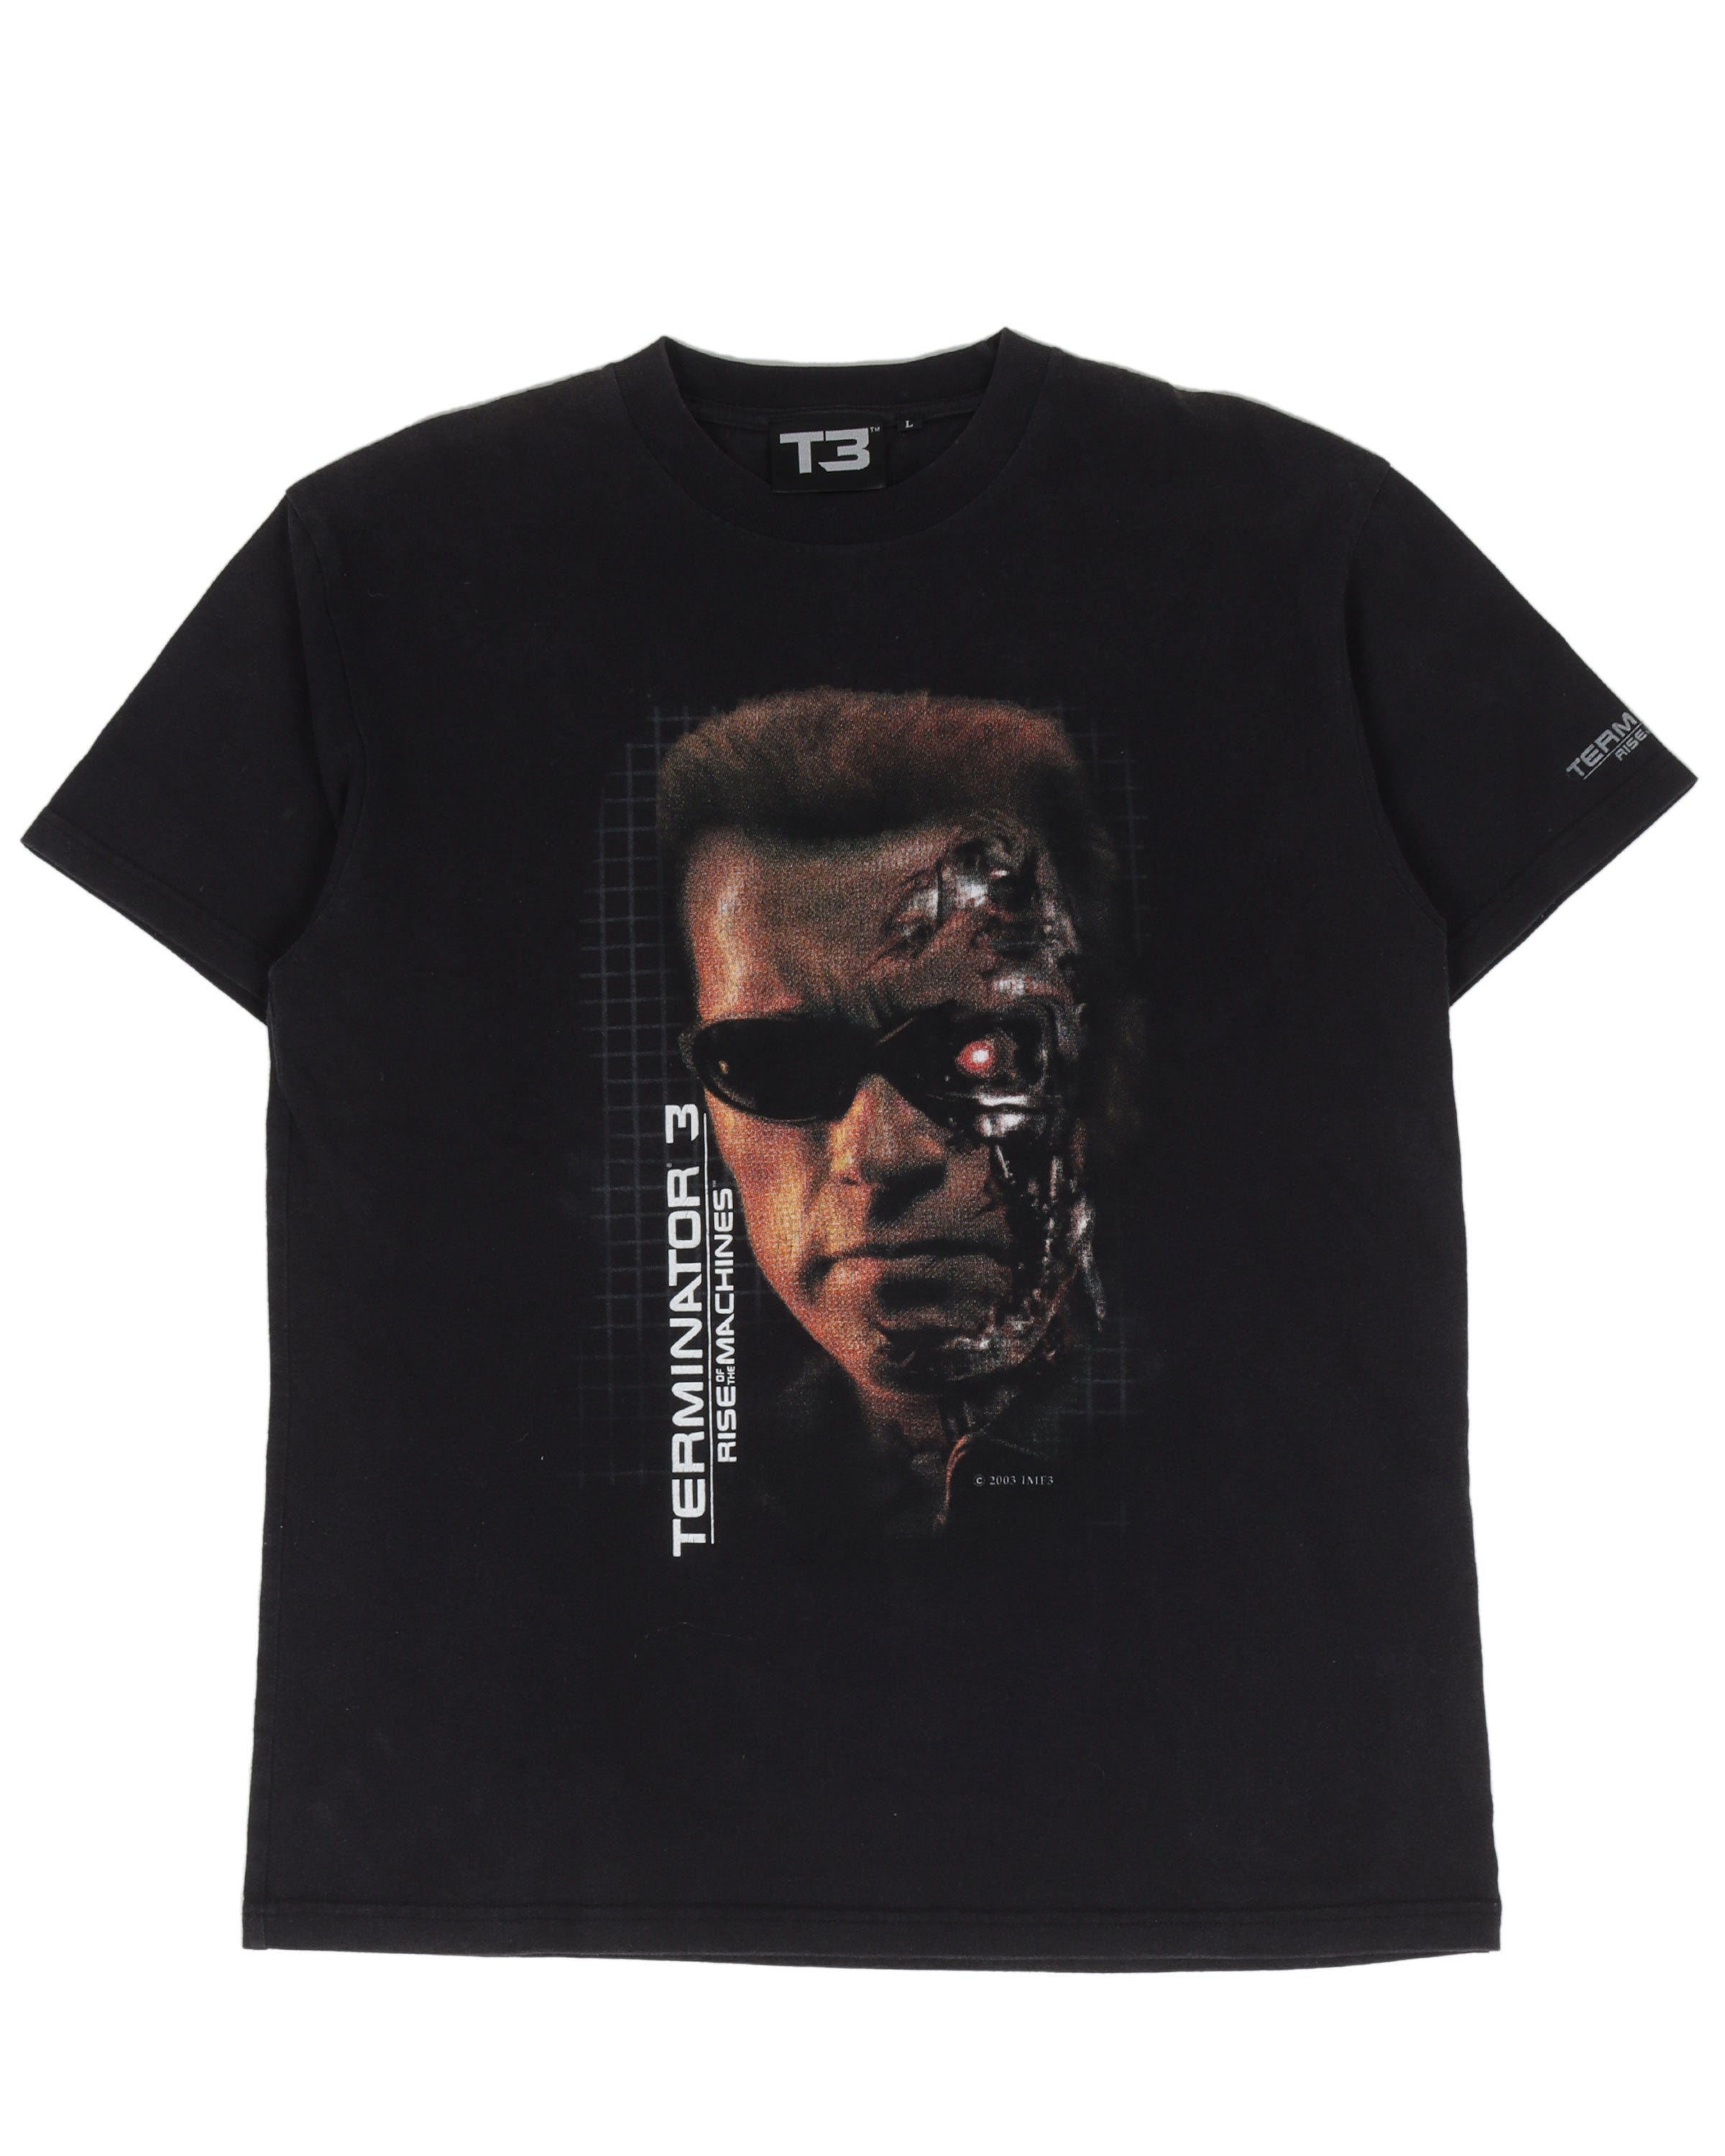 Øjeblik væske kan ikke se Vintage Terminator 3 "Rise of The Machines" T-Shirt